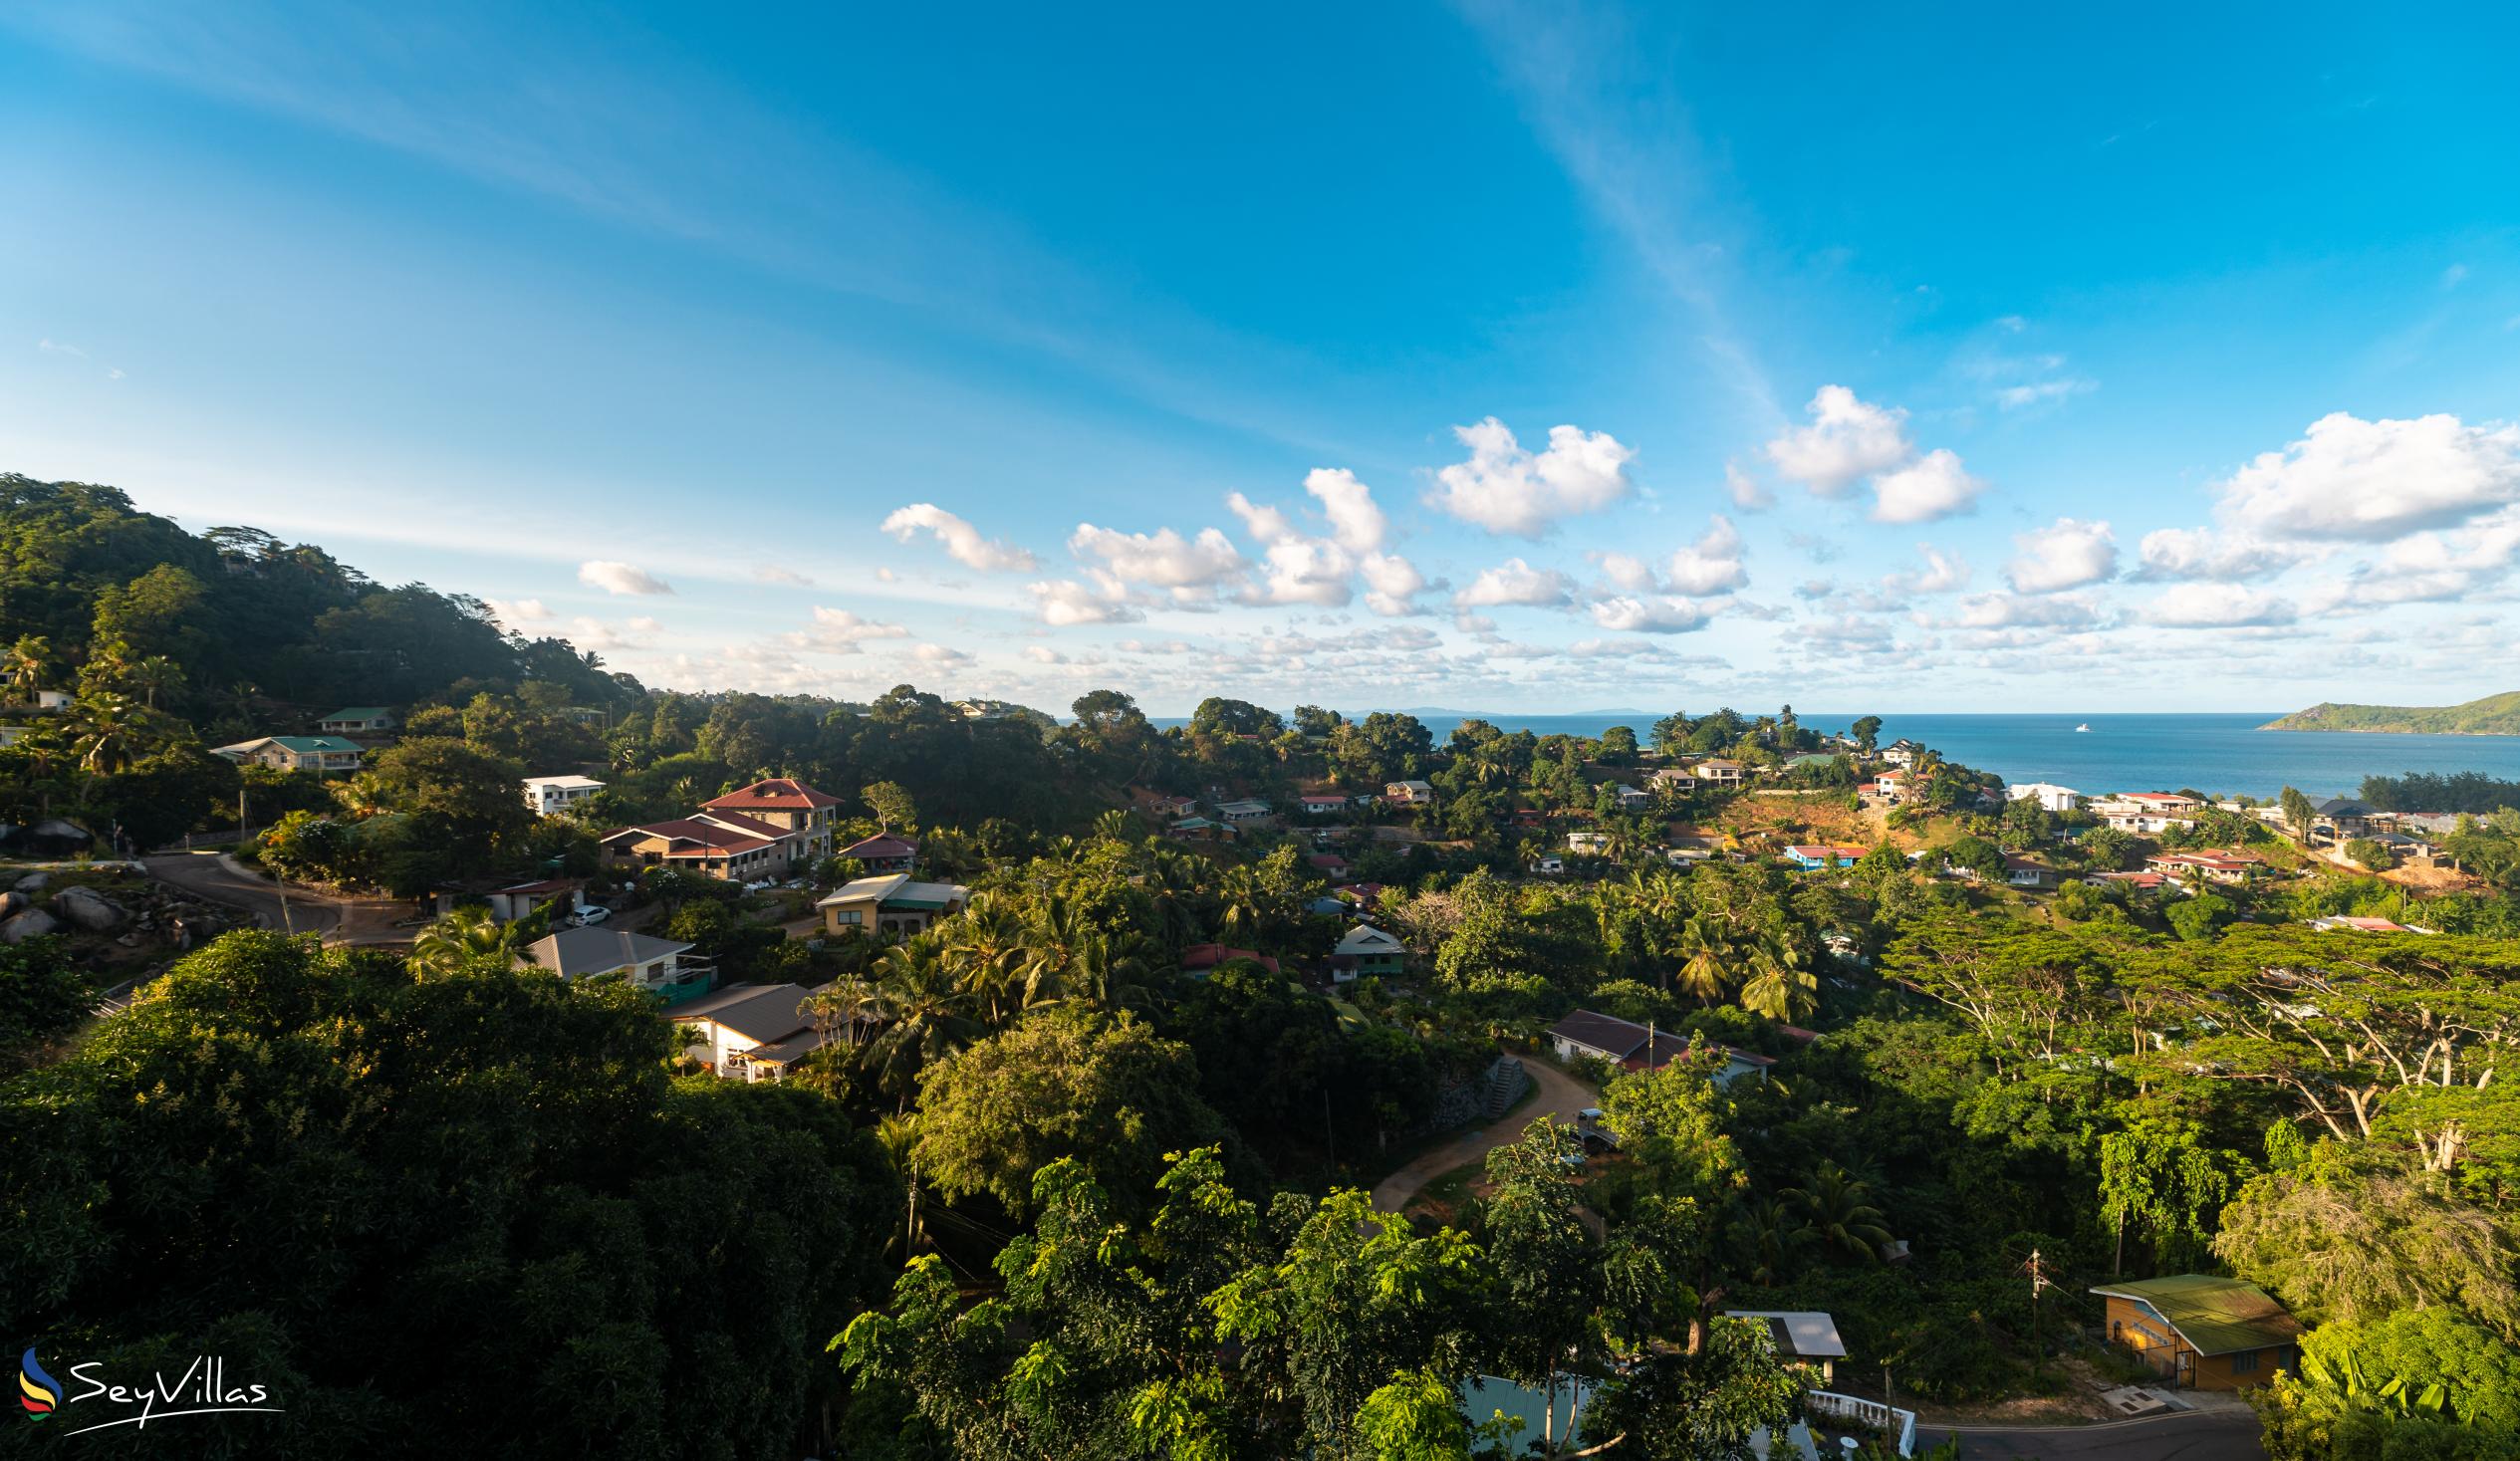 Foto 20: Maison L'Horizon - Location - Mahé (Seychelles)